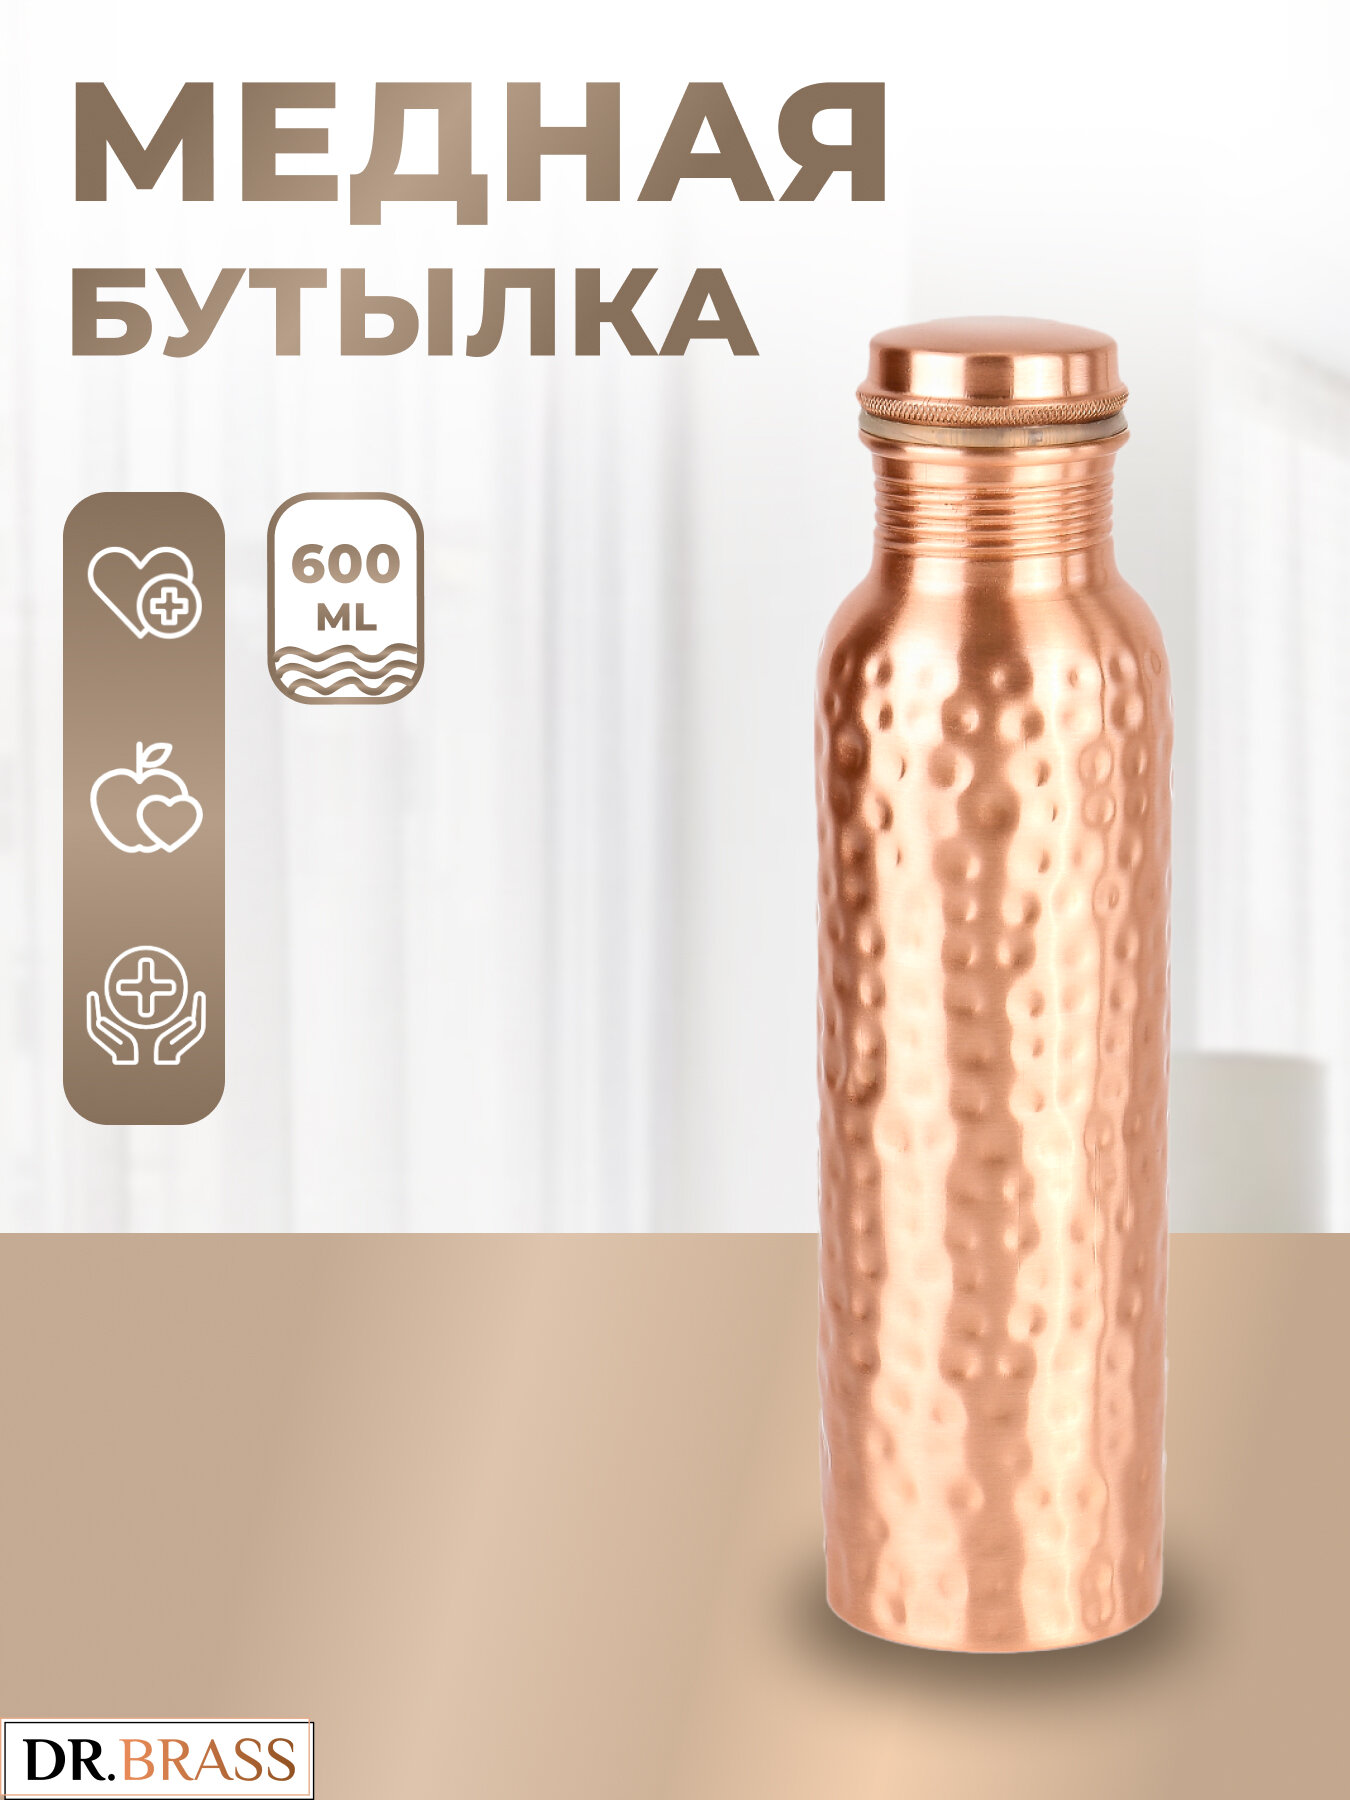 Аюрведическая медная бутылка Dr. Brass TY-M12, 600 мл. Состав металла: Медь 98,37%, Цинк 1,38%, Алюминий 0,25%